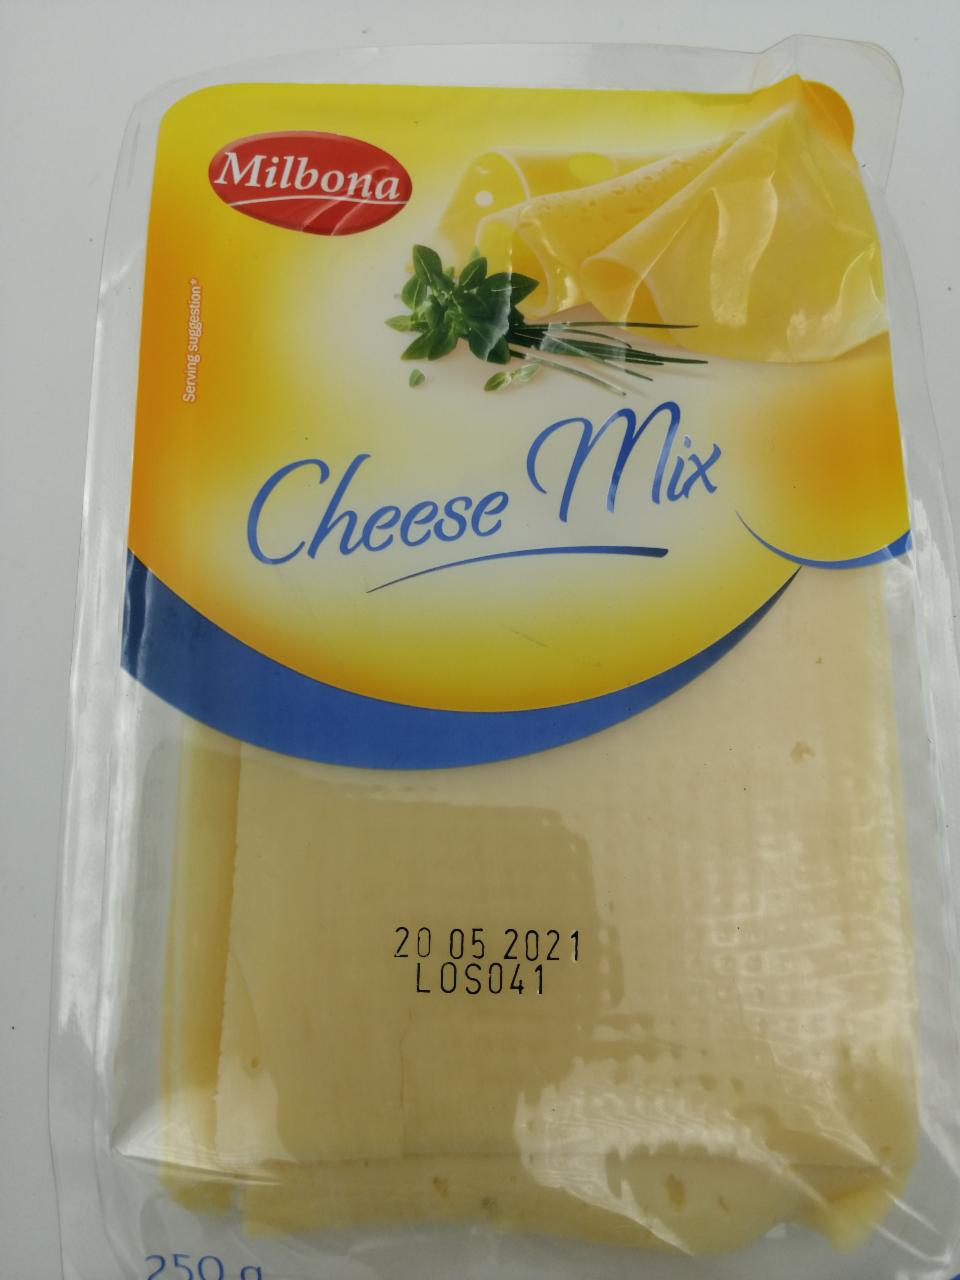 Képek - Cheese mix sajtszeletek Milbona